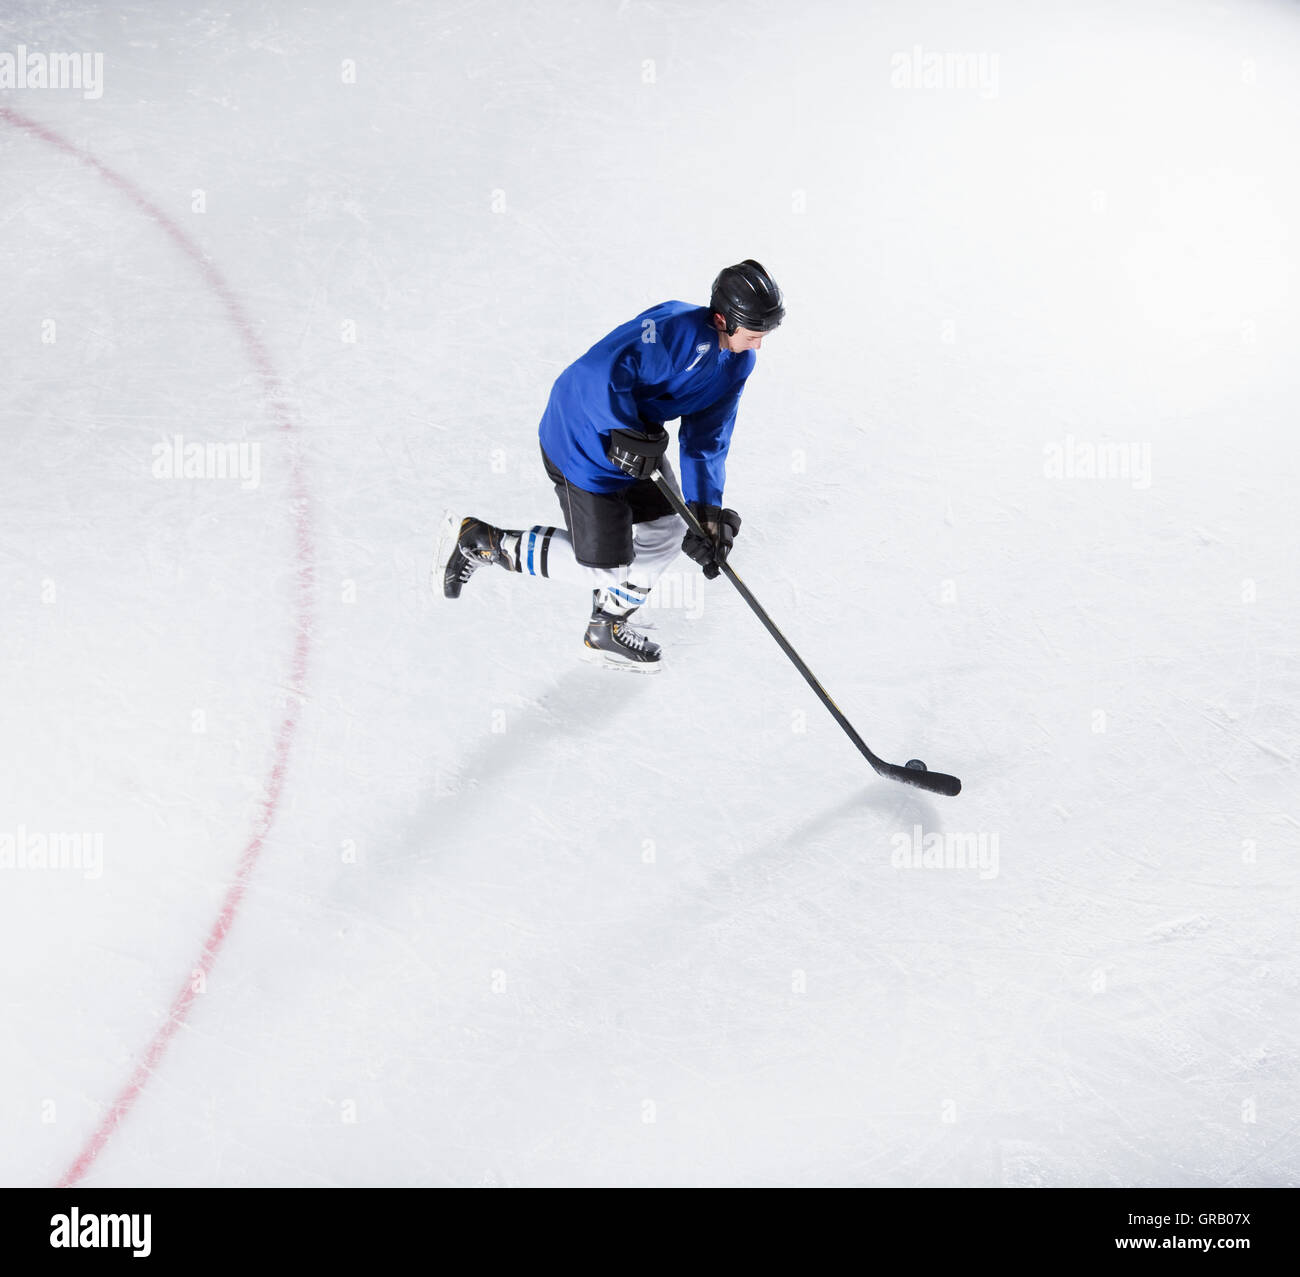 Le joueur de hockey en uniforme bleu avec rondelle de patinage sur glace Banque D'Images